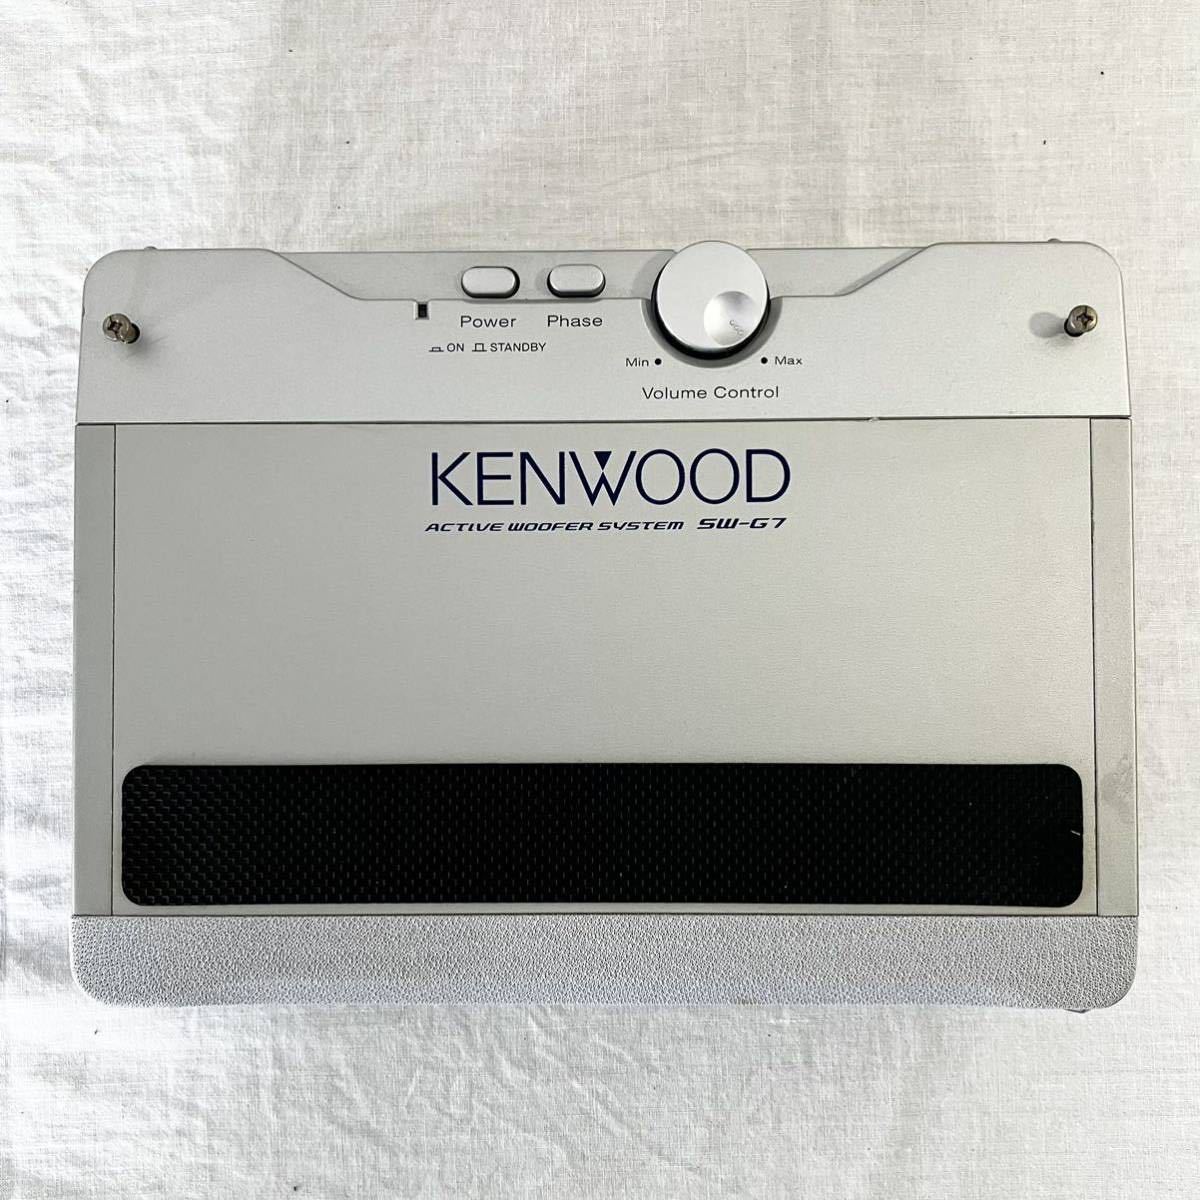 12[ subwoofer ] KENWOOD Kenwood active subwoofer system SW-G7 speaker ornament secondhand goods 